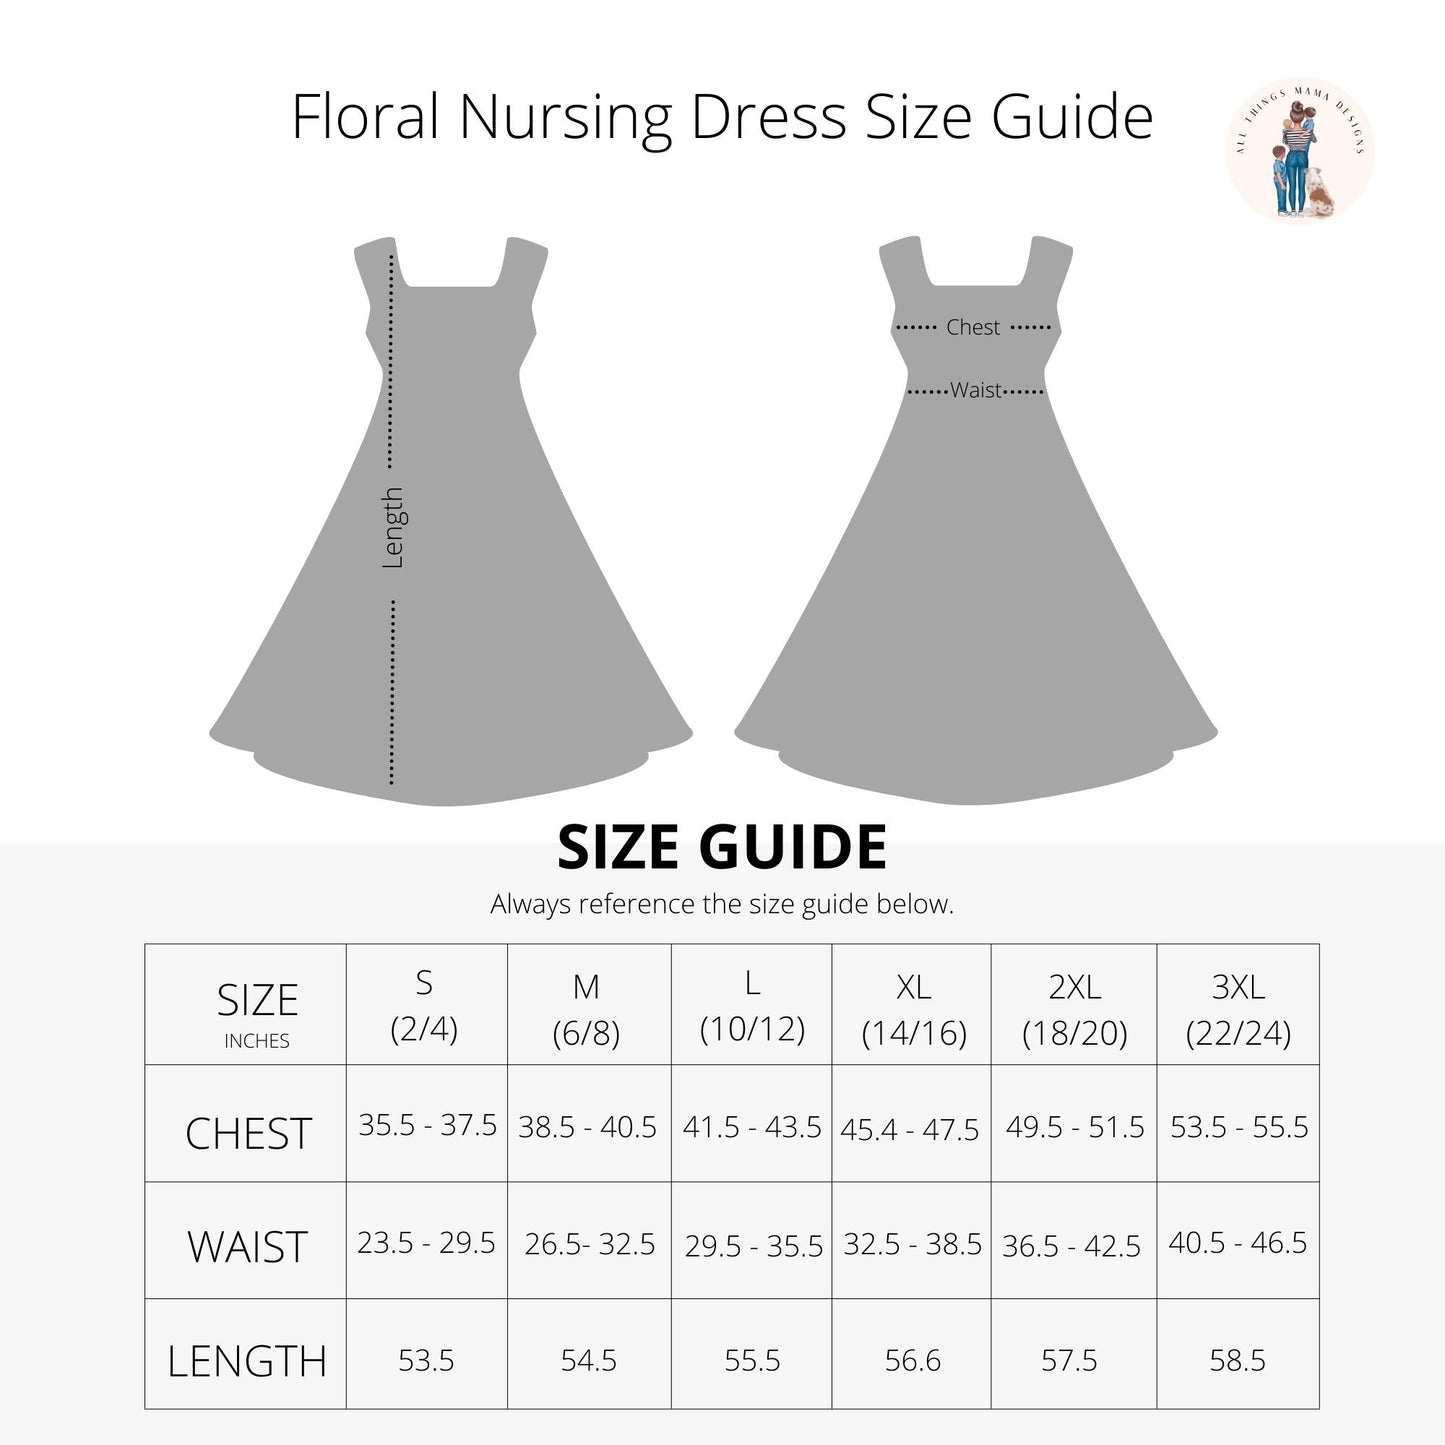 Floral Nursing Dress